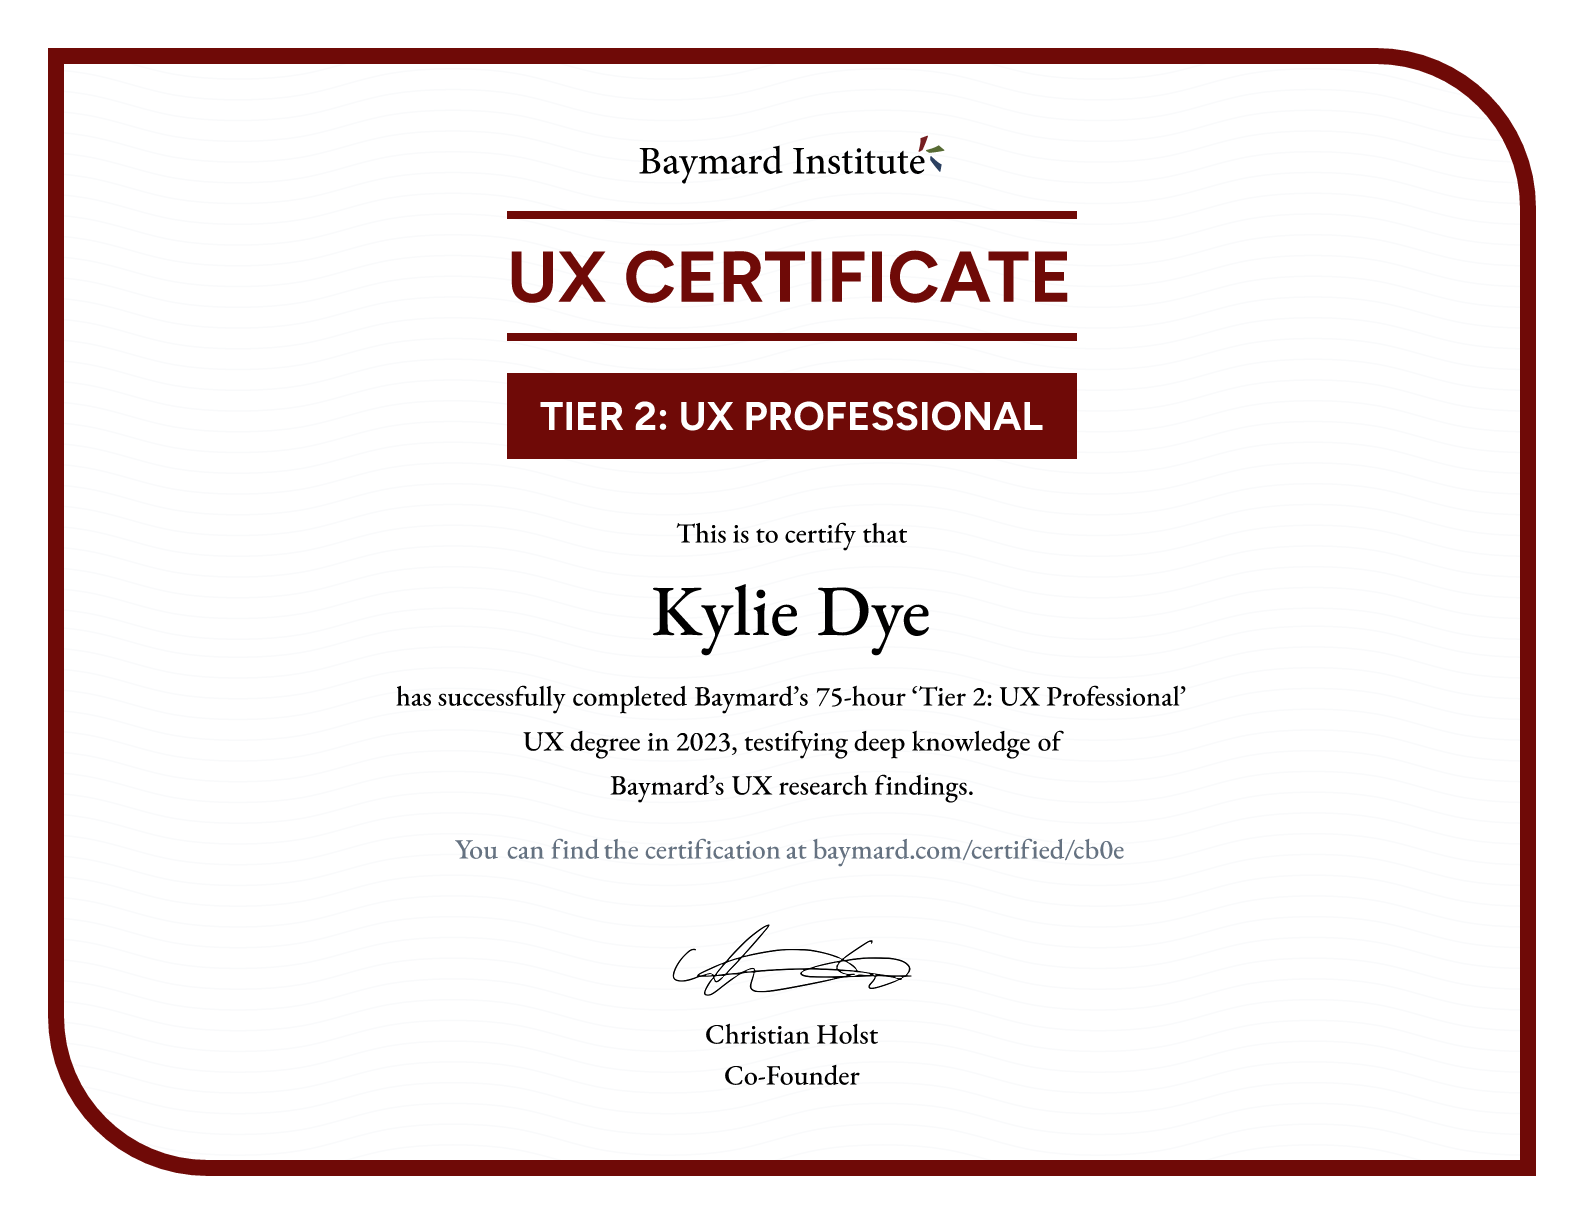 Kylie Dye’s certificate